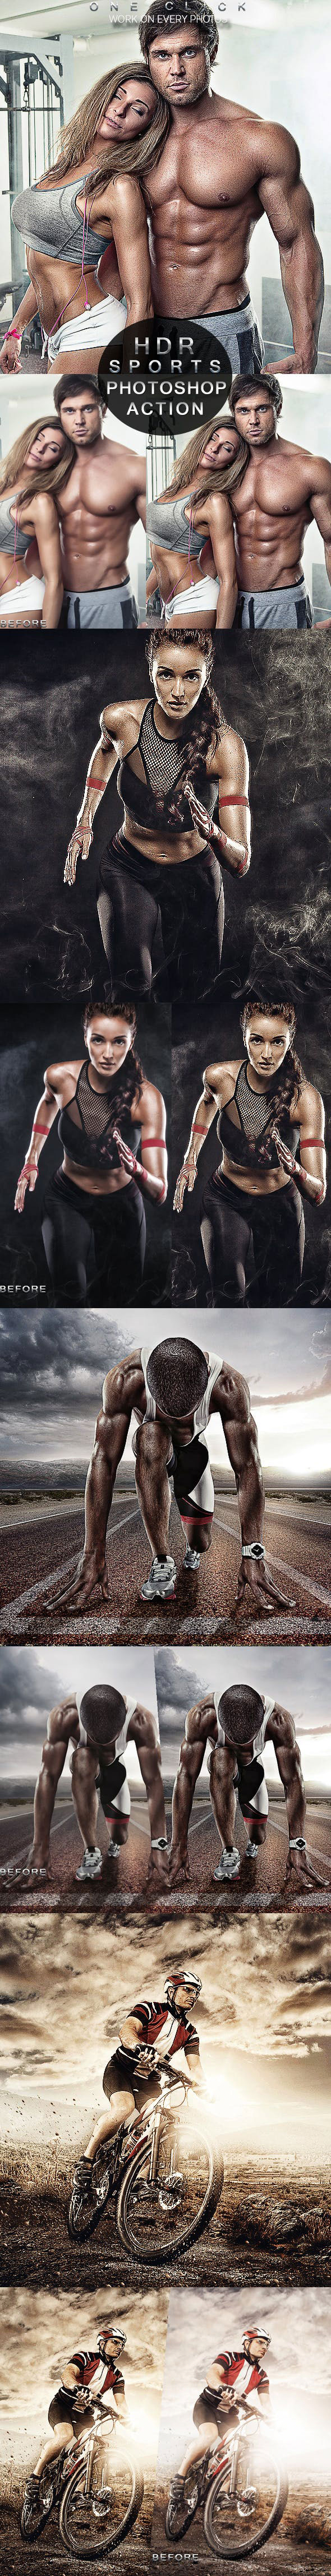 专业户外健身运动照片HDR处理的Photoshop动作 PRO Sports Photoshop Action [atn]插图